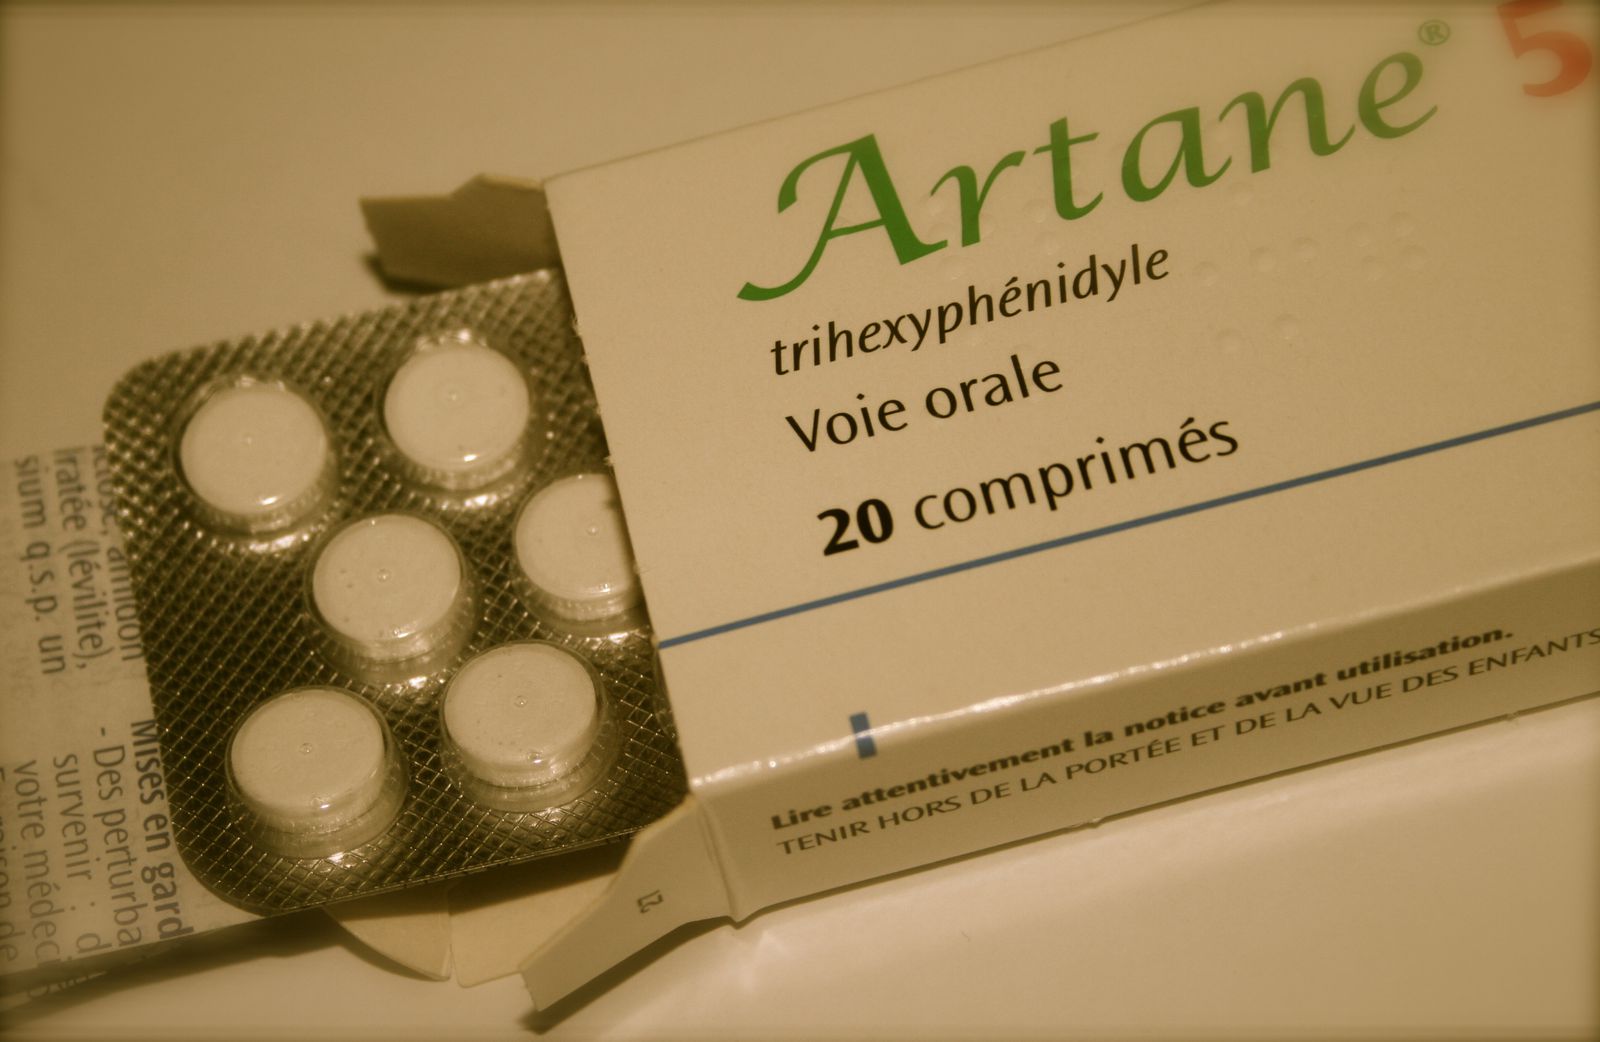 Artane Online Without Prescription